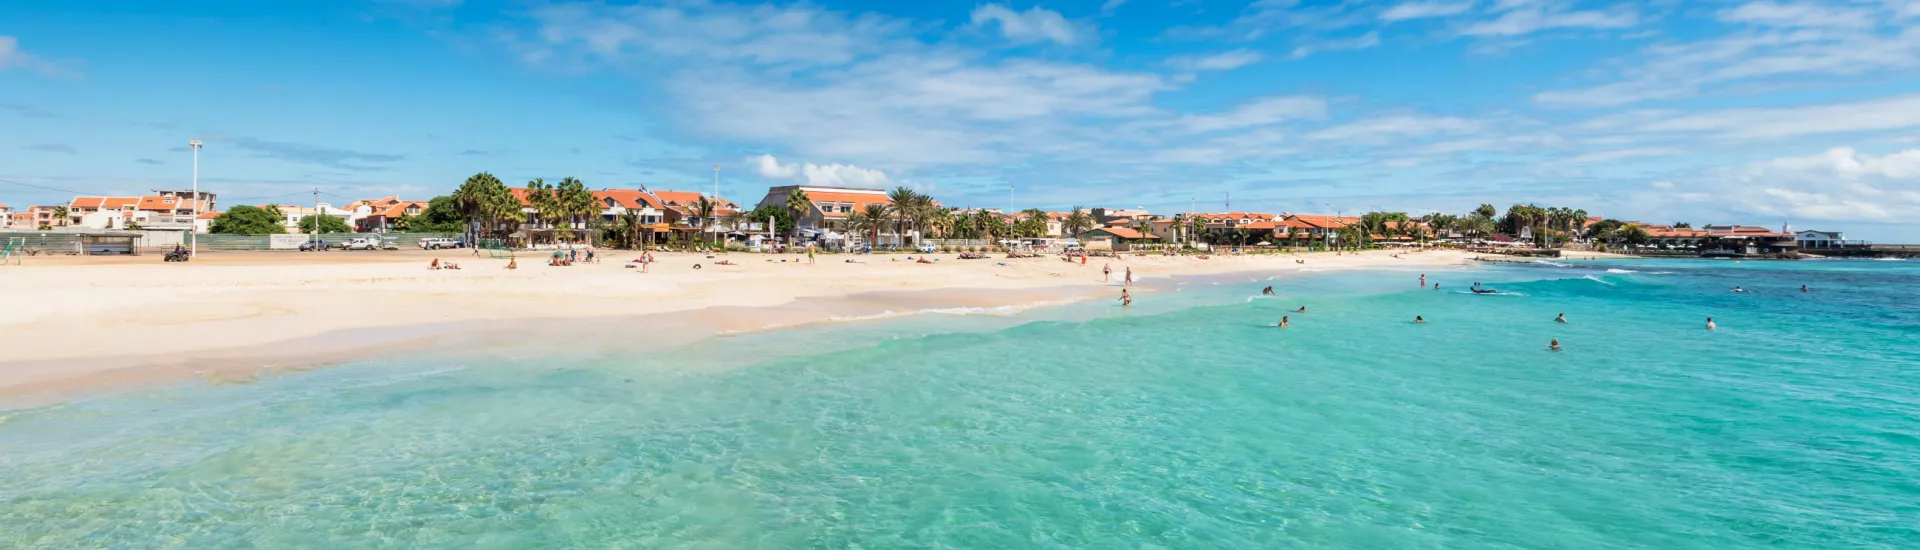 Panoramic view of Santa Maria beach in Sal Cape Verde